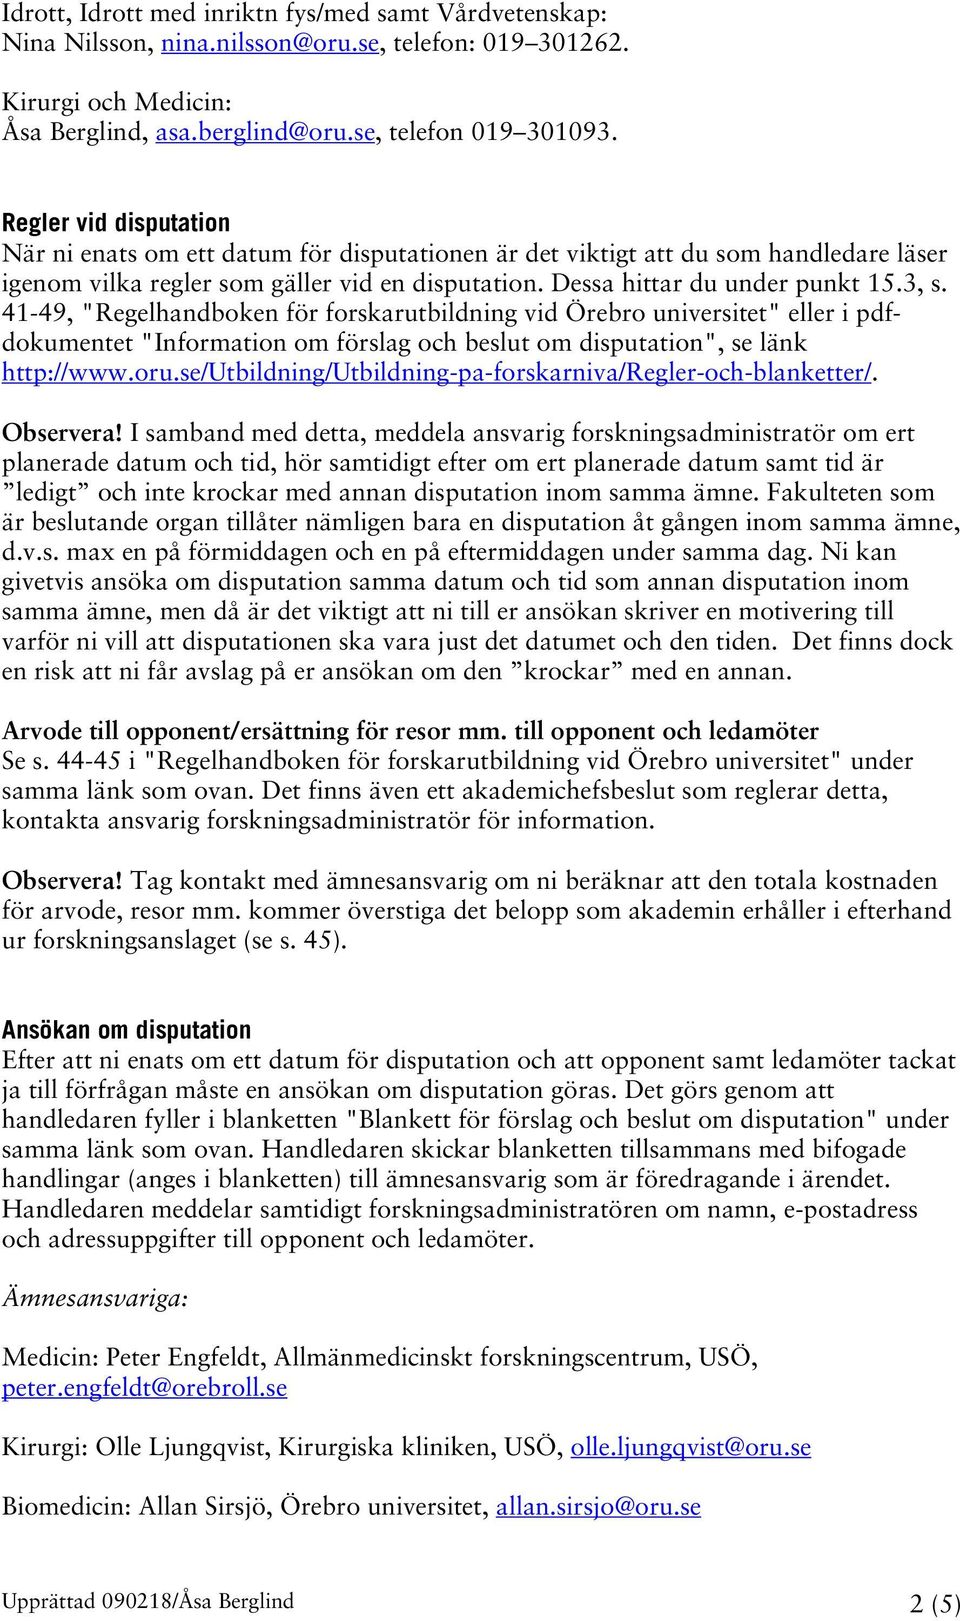 41-49, "Regelhandboken för forskarutbildning vid Örebro universitet" eller i pdfdokumentet "Information om förslag och beslut om disputation", se länk http://www.oru.